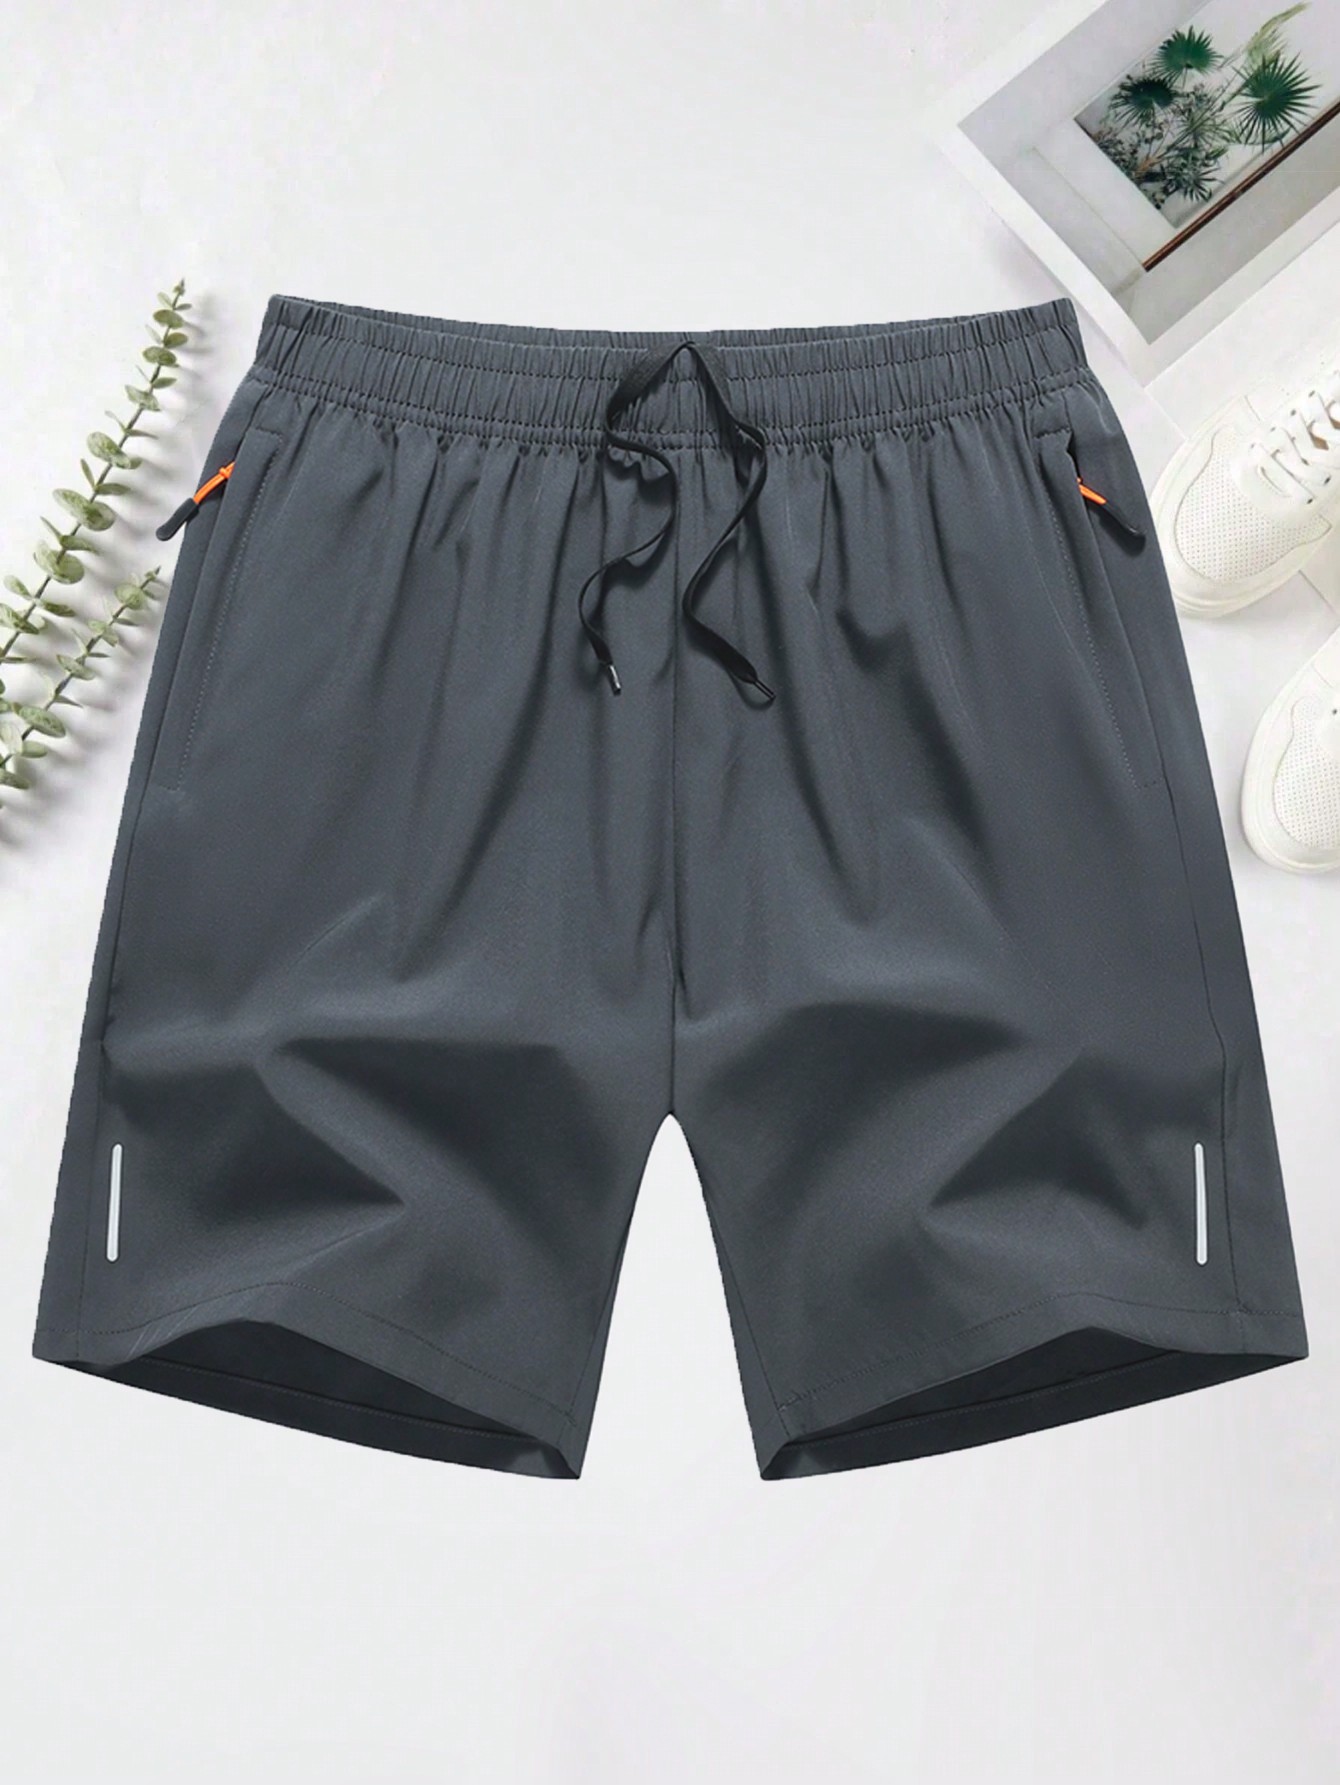 Мужские повседневные спортивные шорты с эластичной резинкой на талии, светло-серый